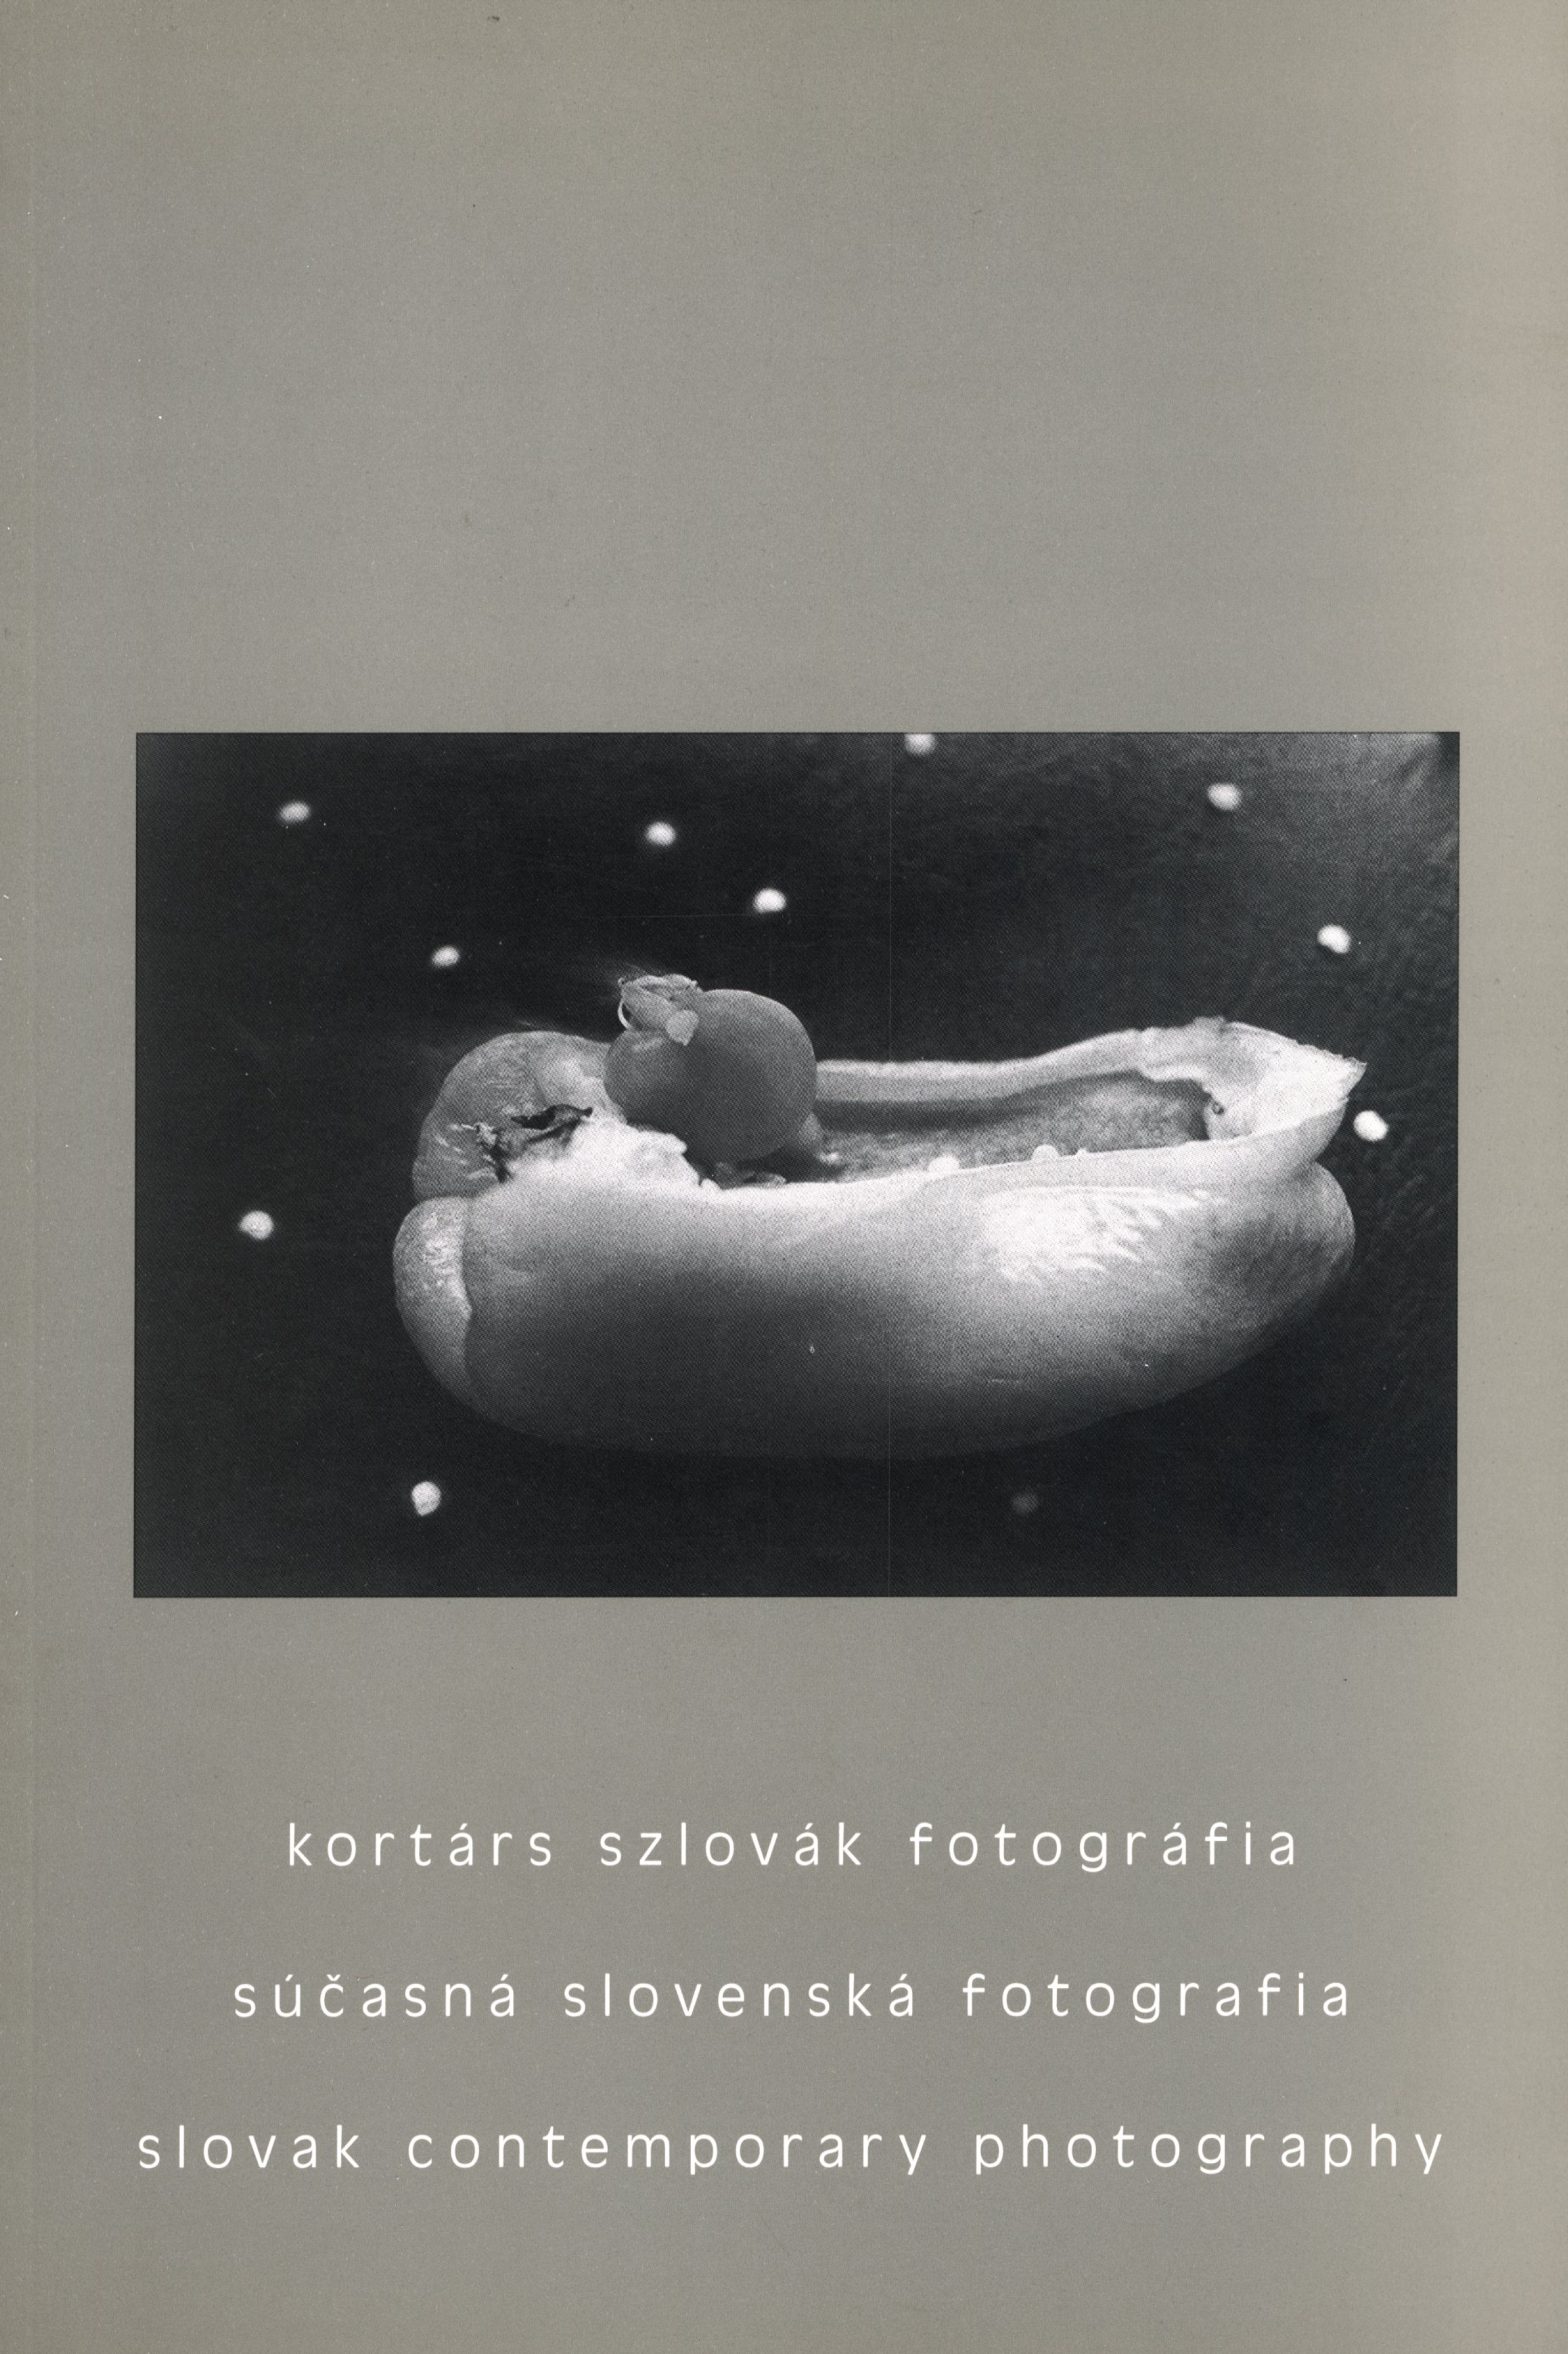 Kortárs Szlovák Fotográfia Various Artists